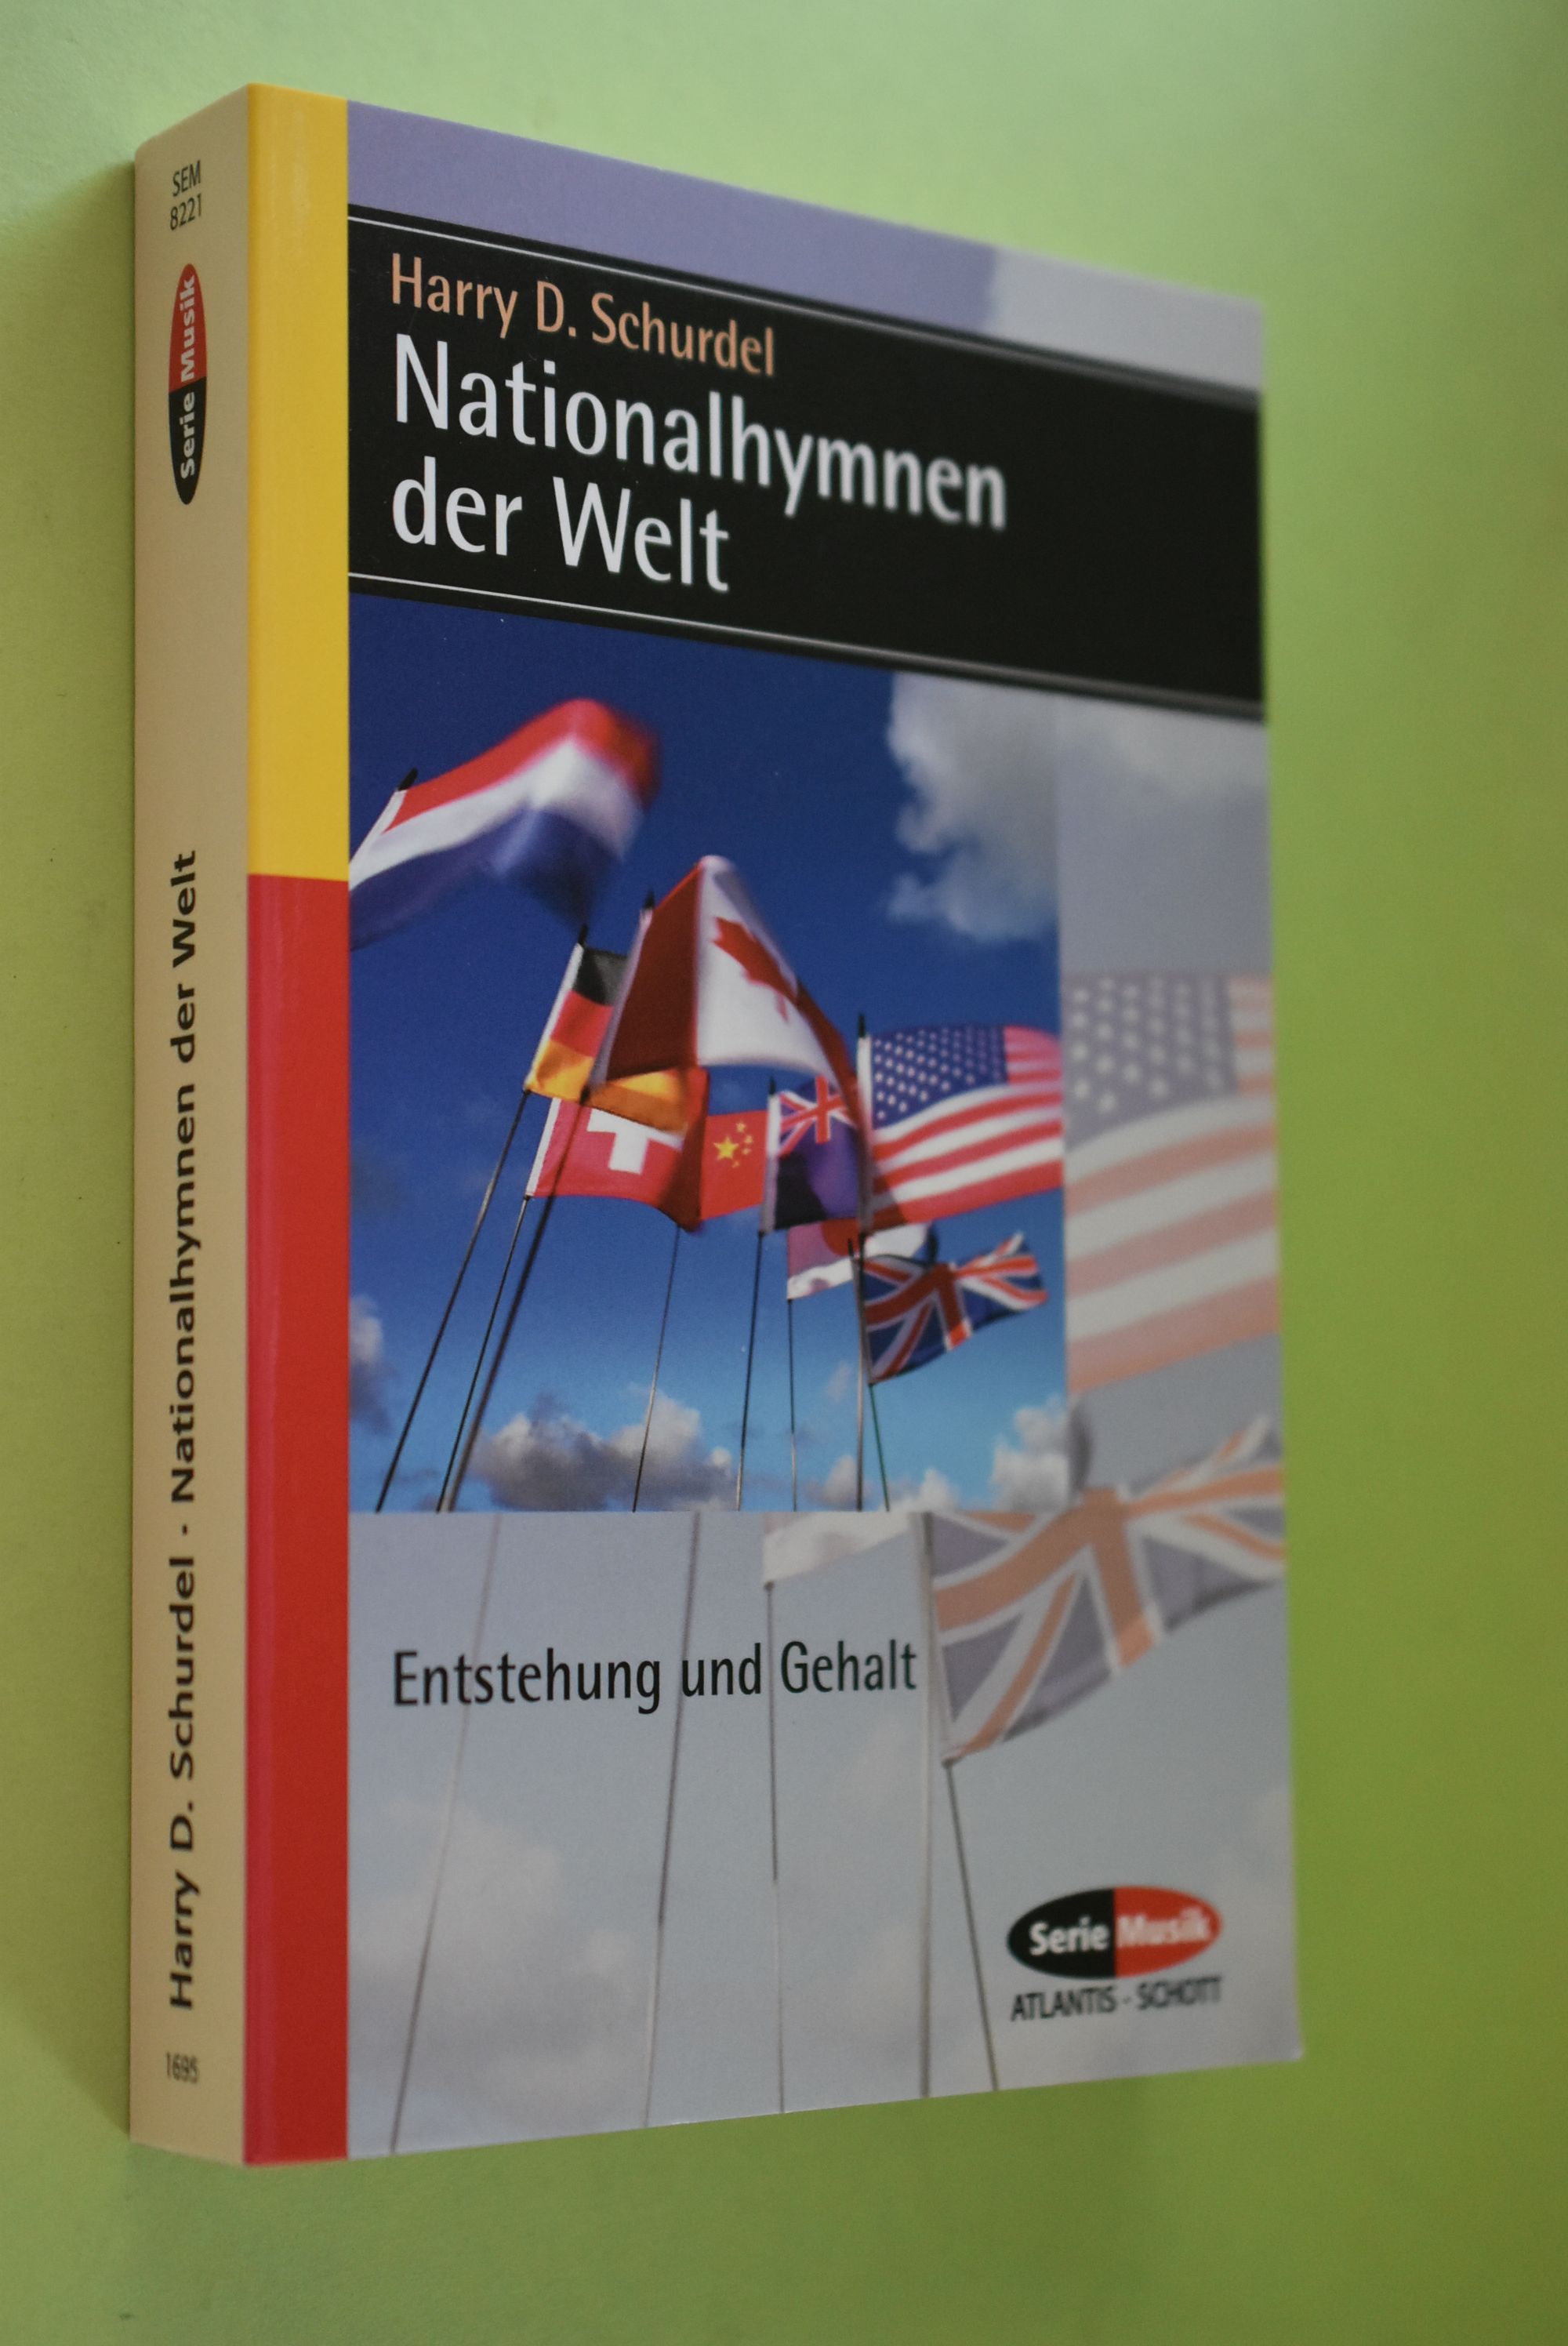 Nationalhymnen der Welt : Entstehung und Gehalt. Serie Musik Atlantis, Schott ; Bd. 8221 - Schurdel, Harry D.